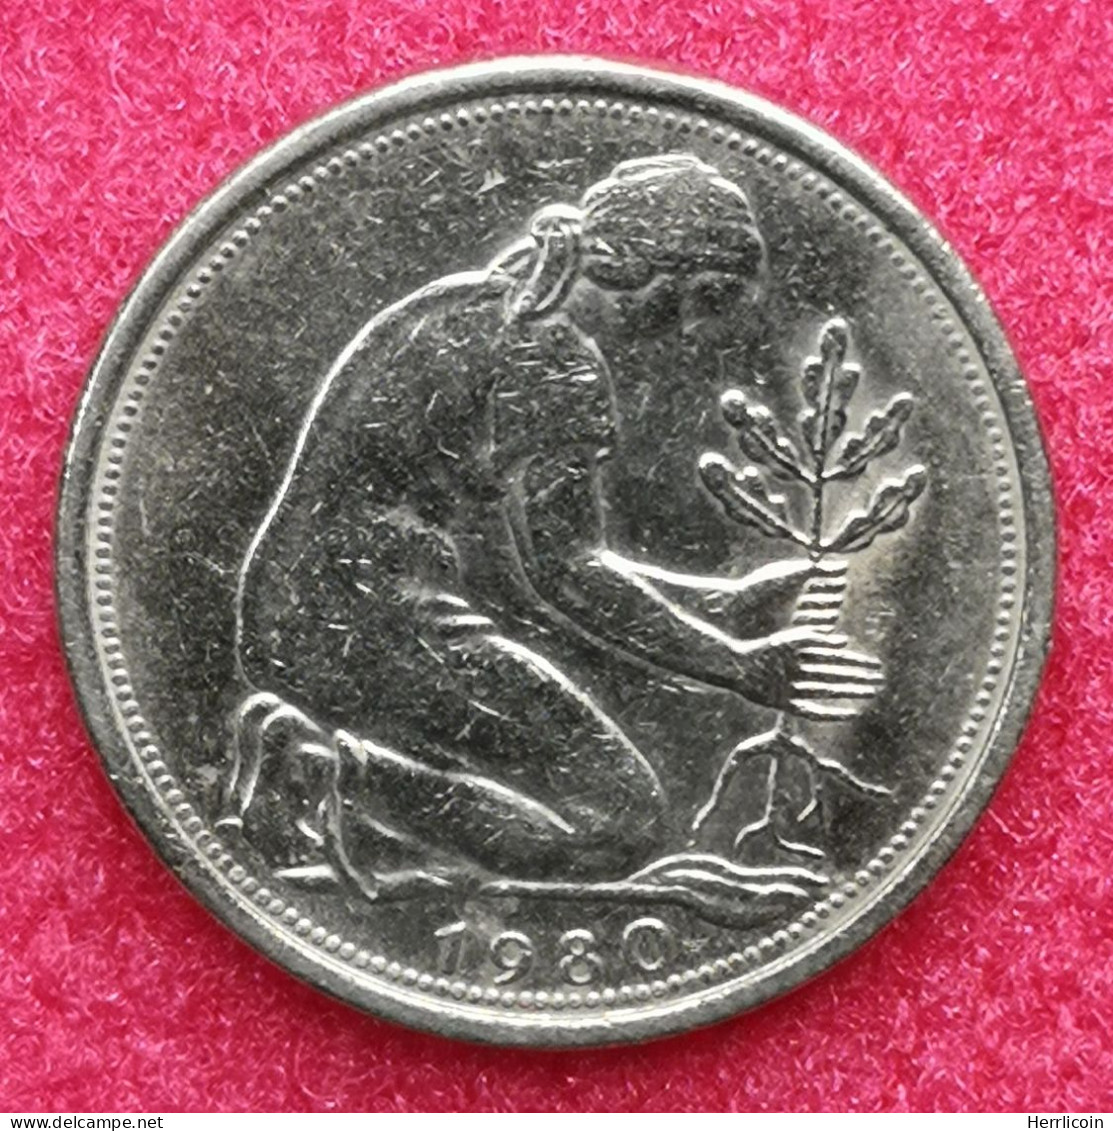 Monnaie Allemagne - 1980 G - 50 Pfennig Bundesrepublik Deutschland - 50 Pfennig